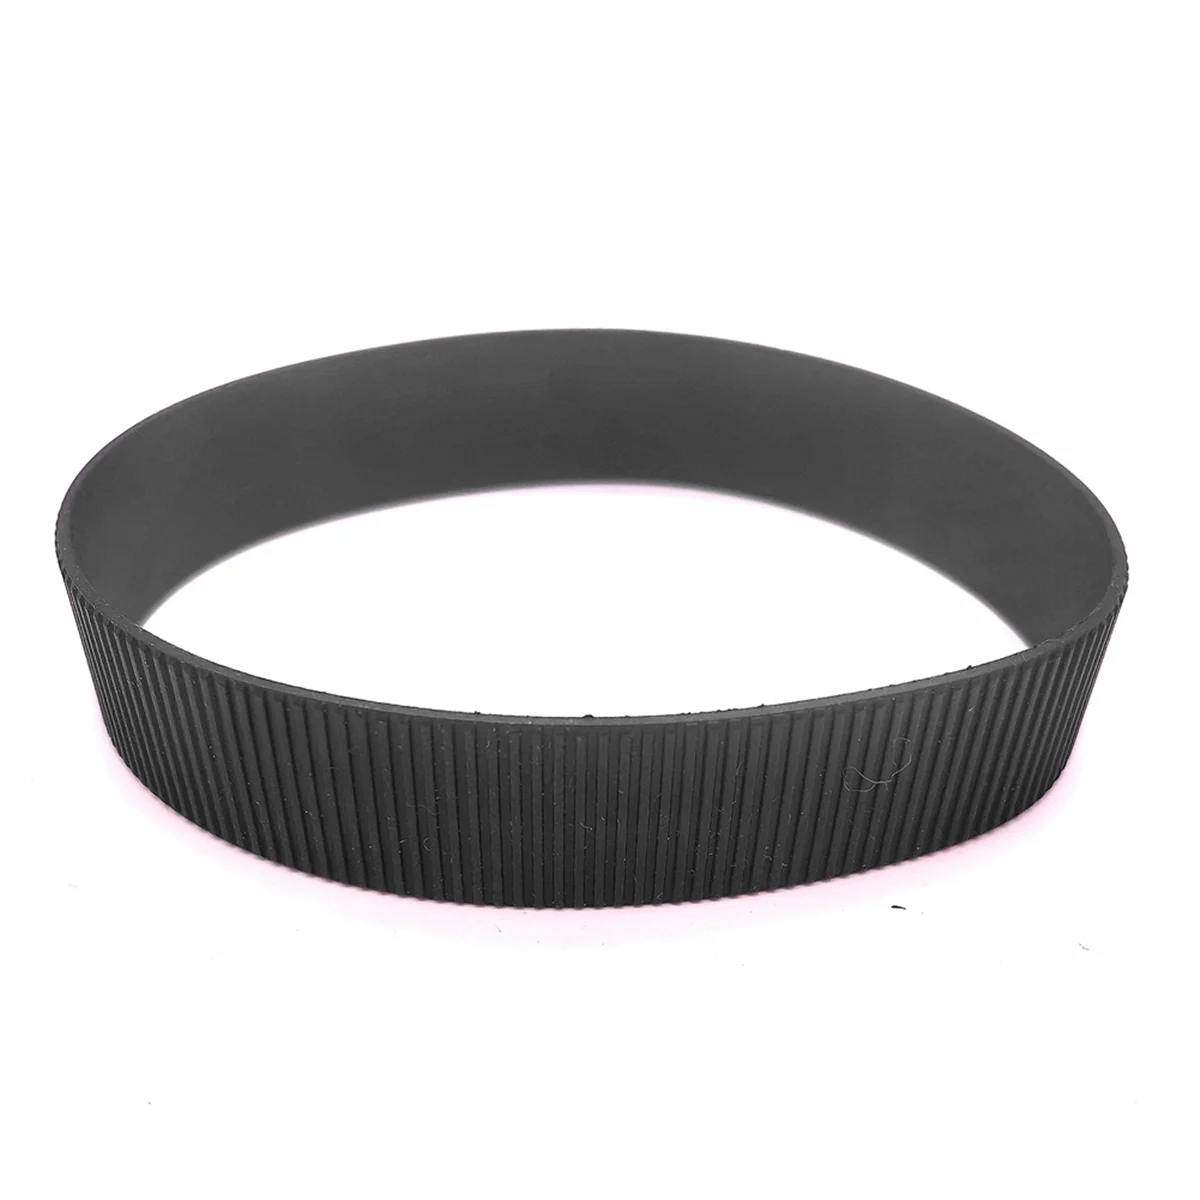 

Резиновый зум для Sony FE 24-70 2,8 GM резиновая рукоятка 24-70 мм резиновое кольцо запасные части для объектива камеры